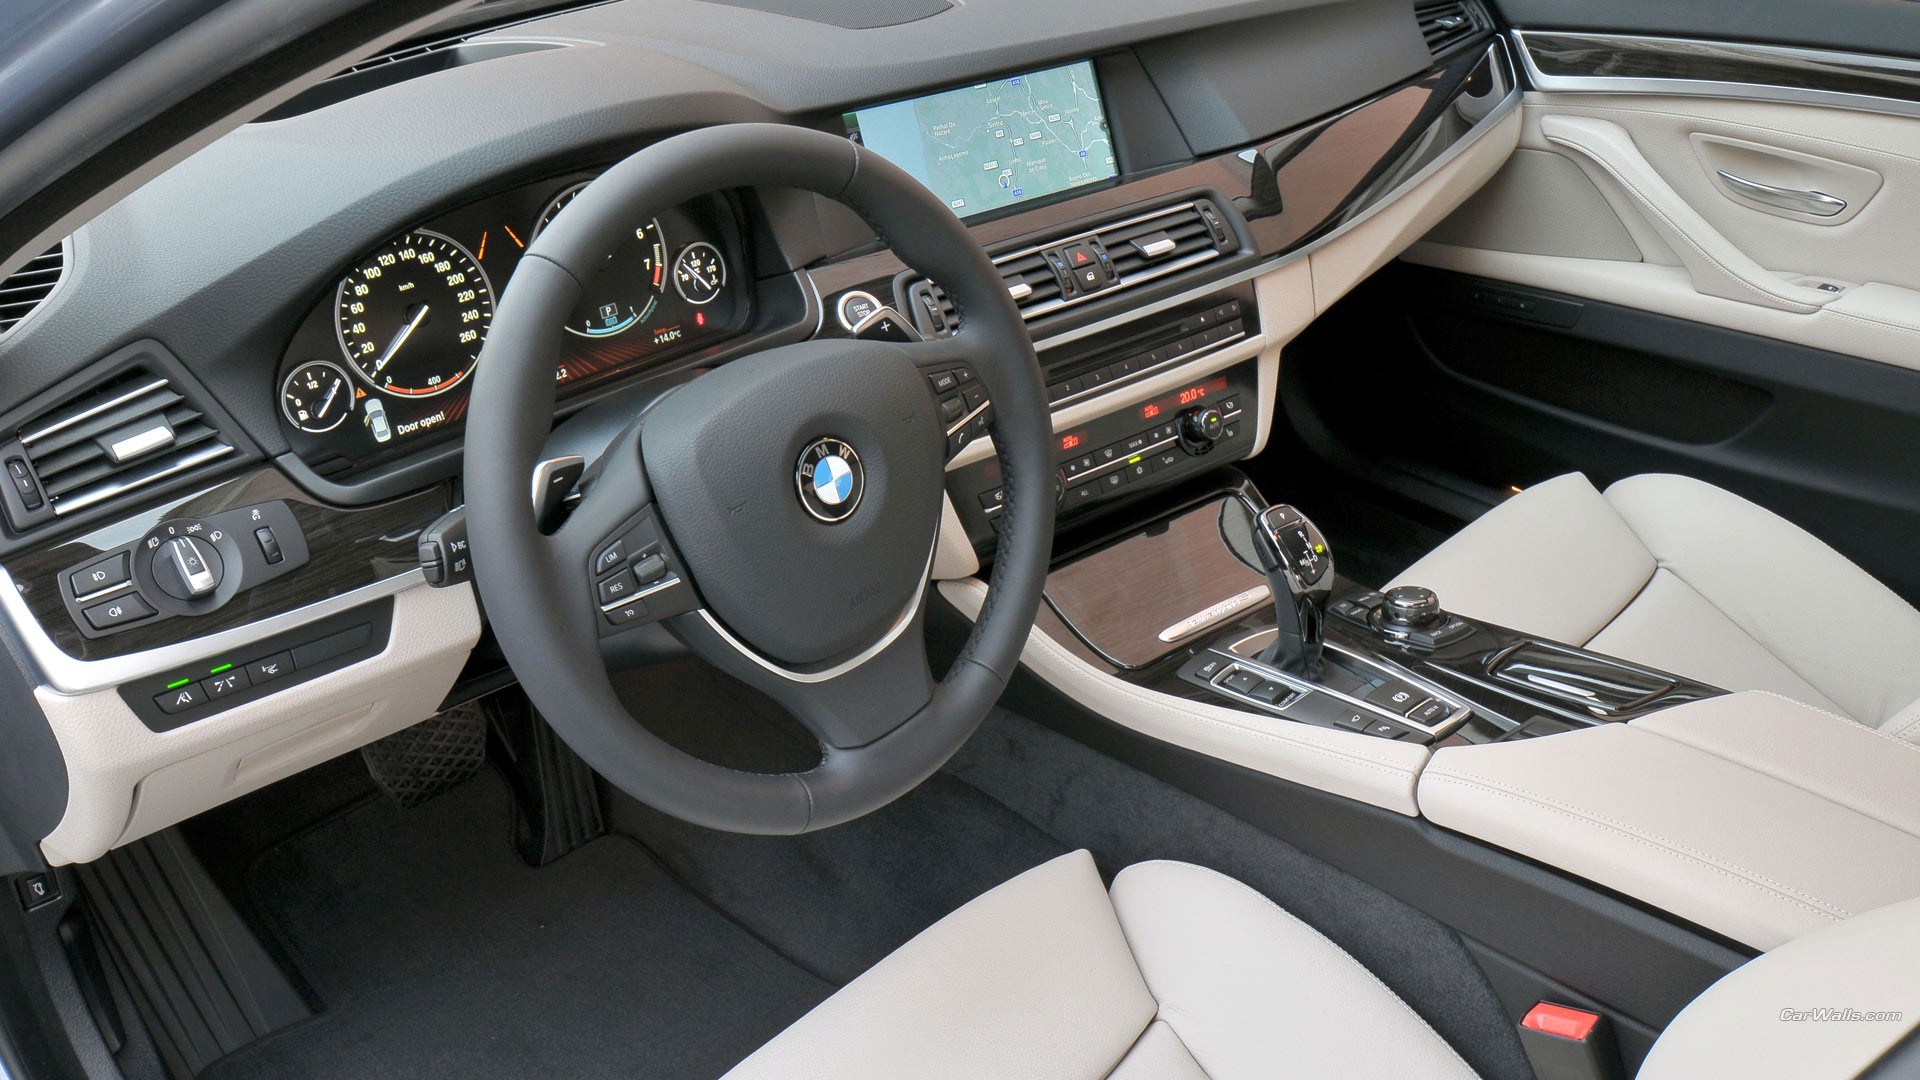 General 1920x1080 hybrid (car) car car interior BMW 5 Series BMW F10 BMW vehicle